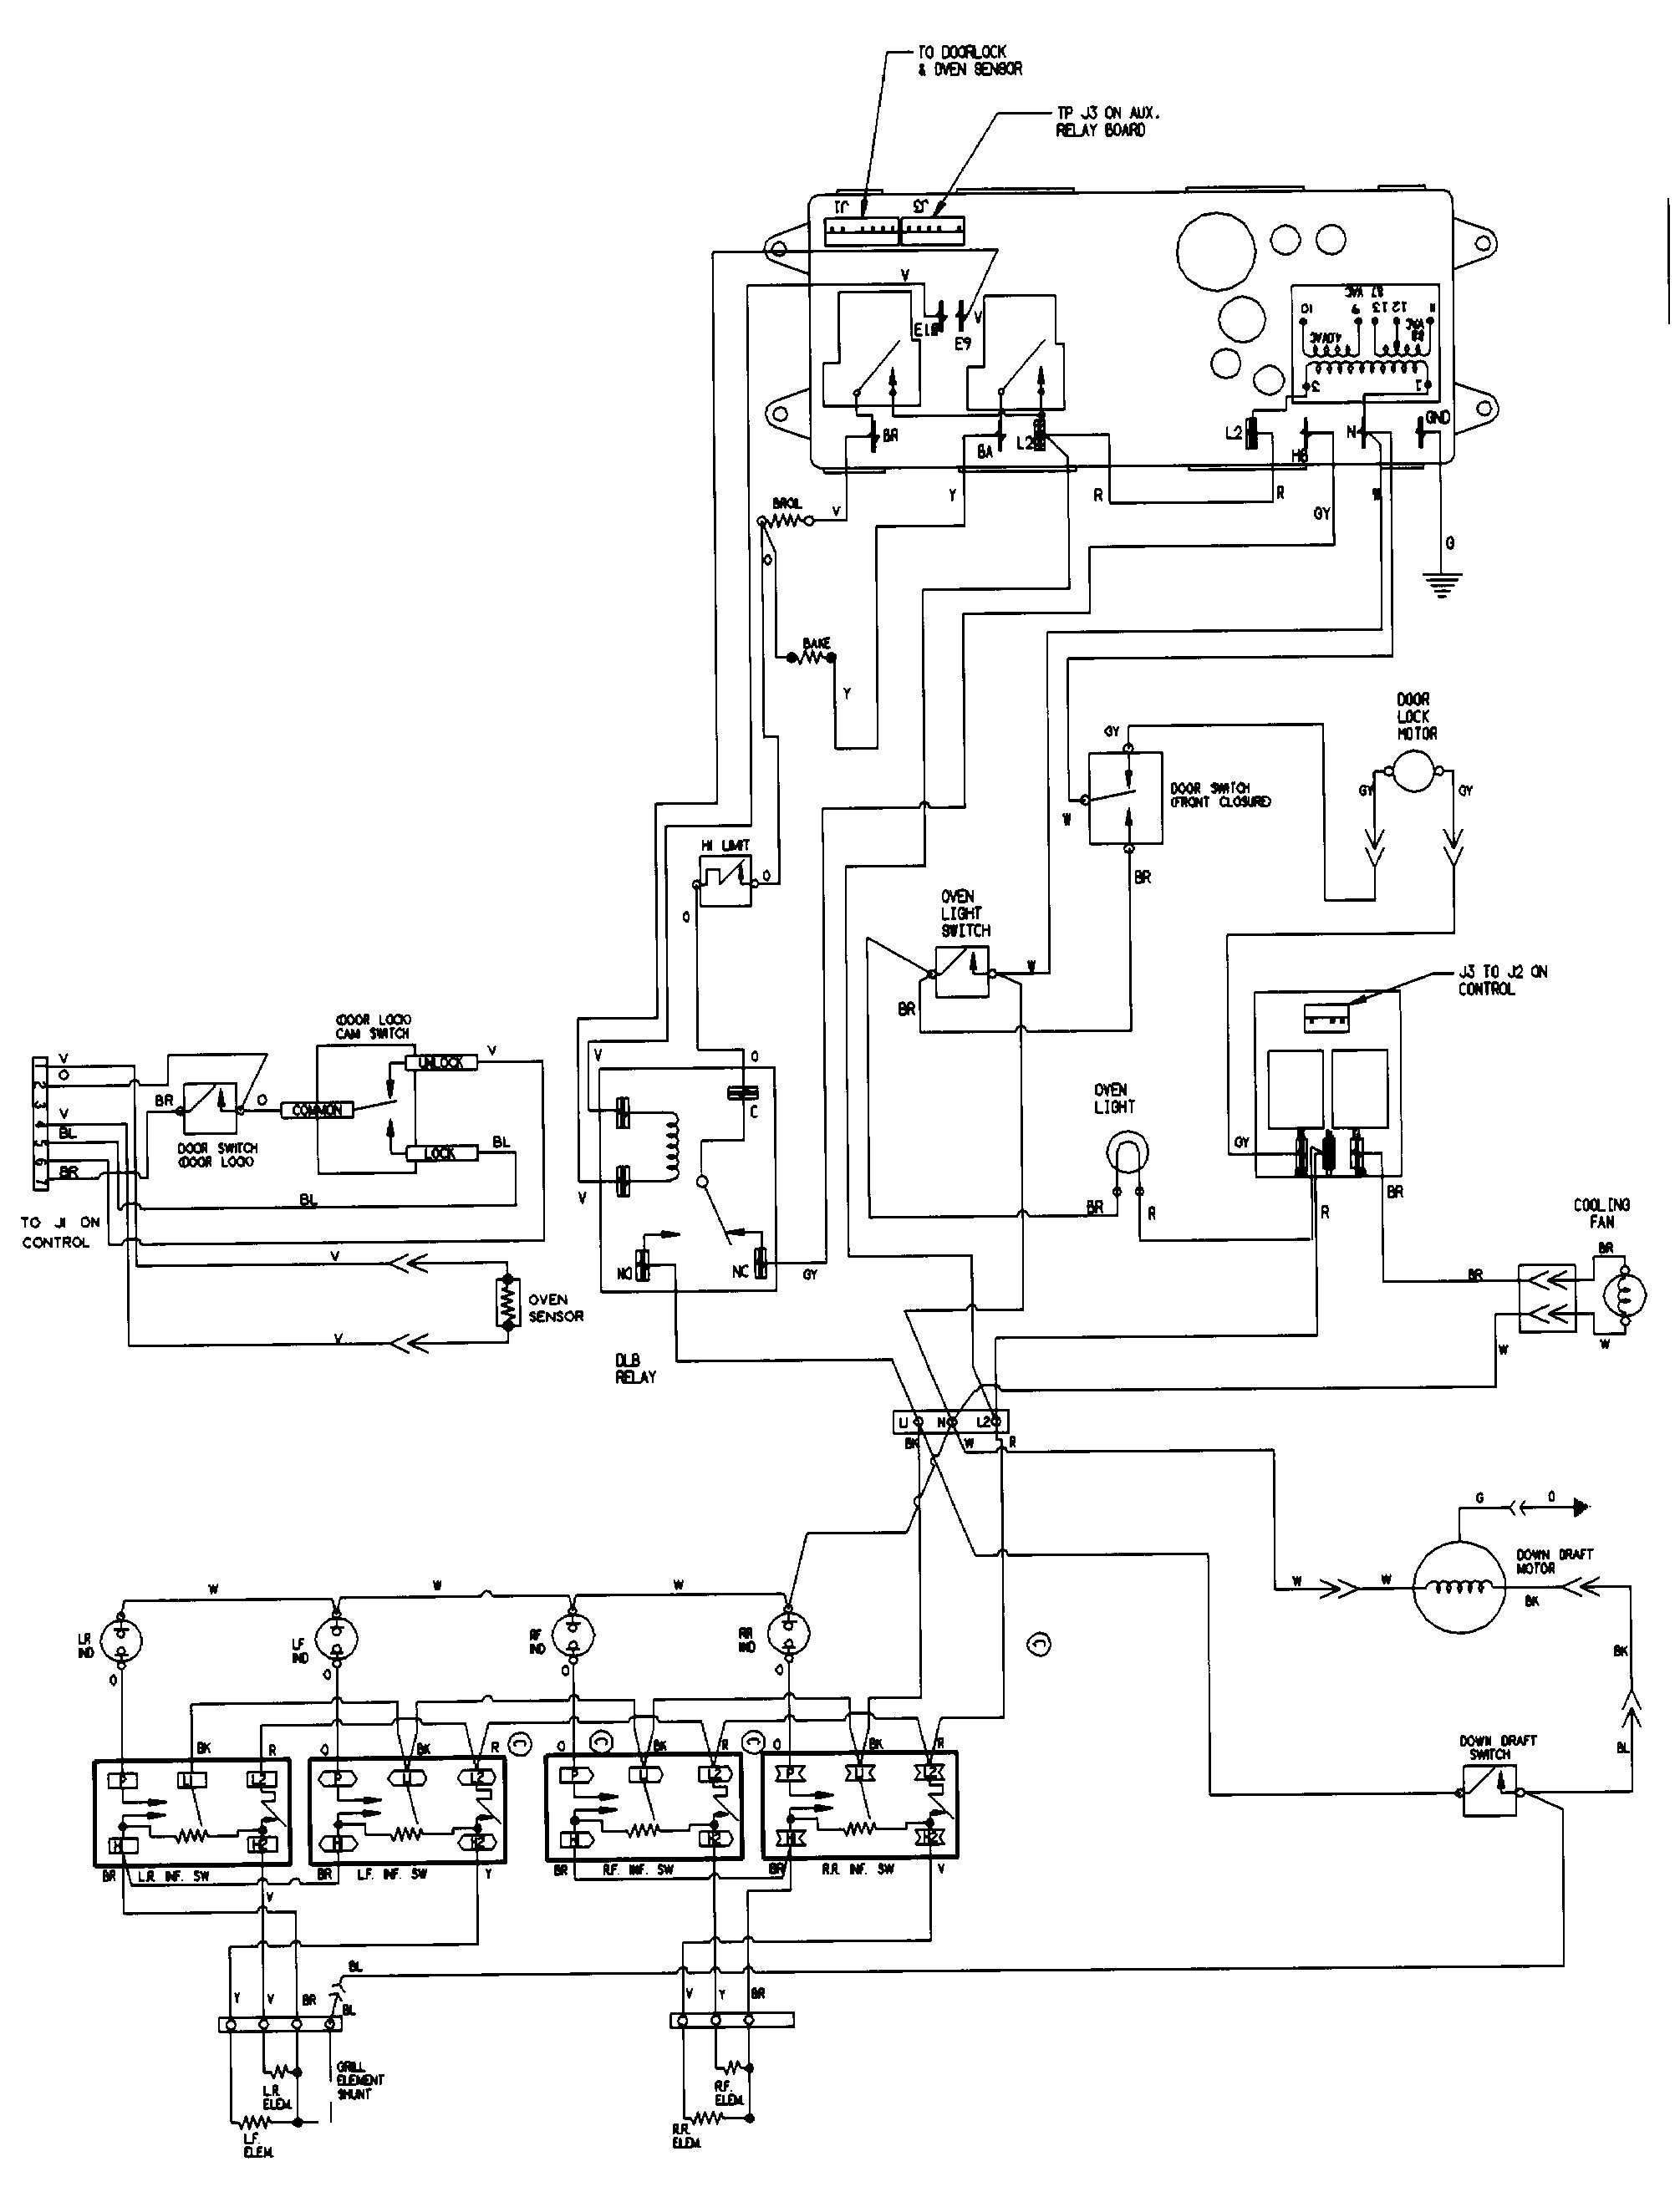 Honda Engine Wiring Diagram from detoxicrecenze.com